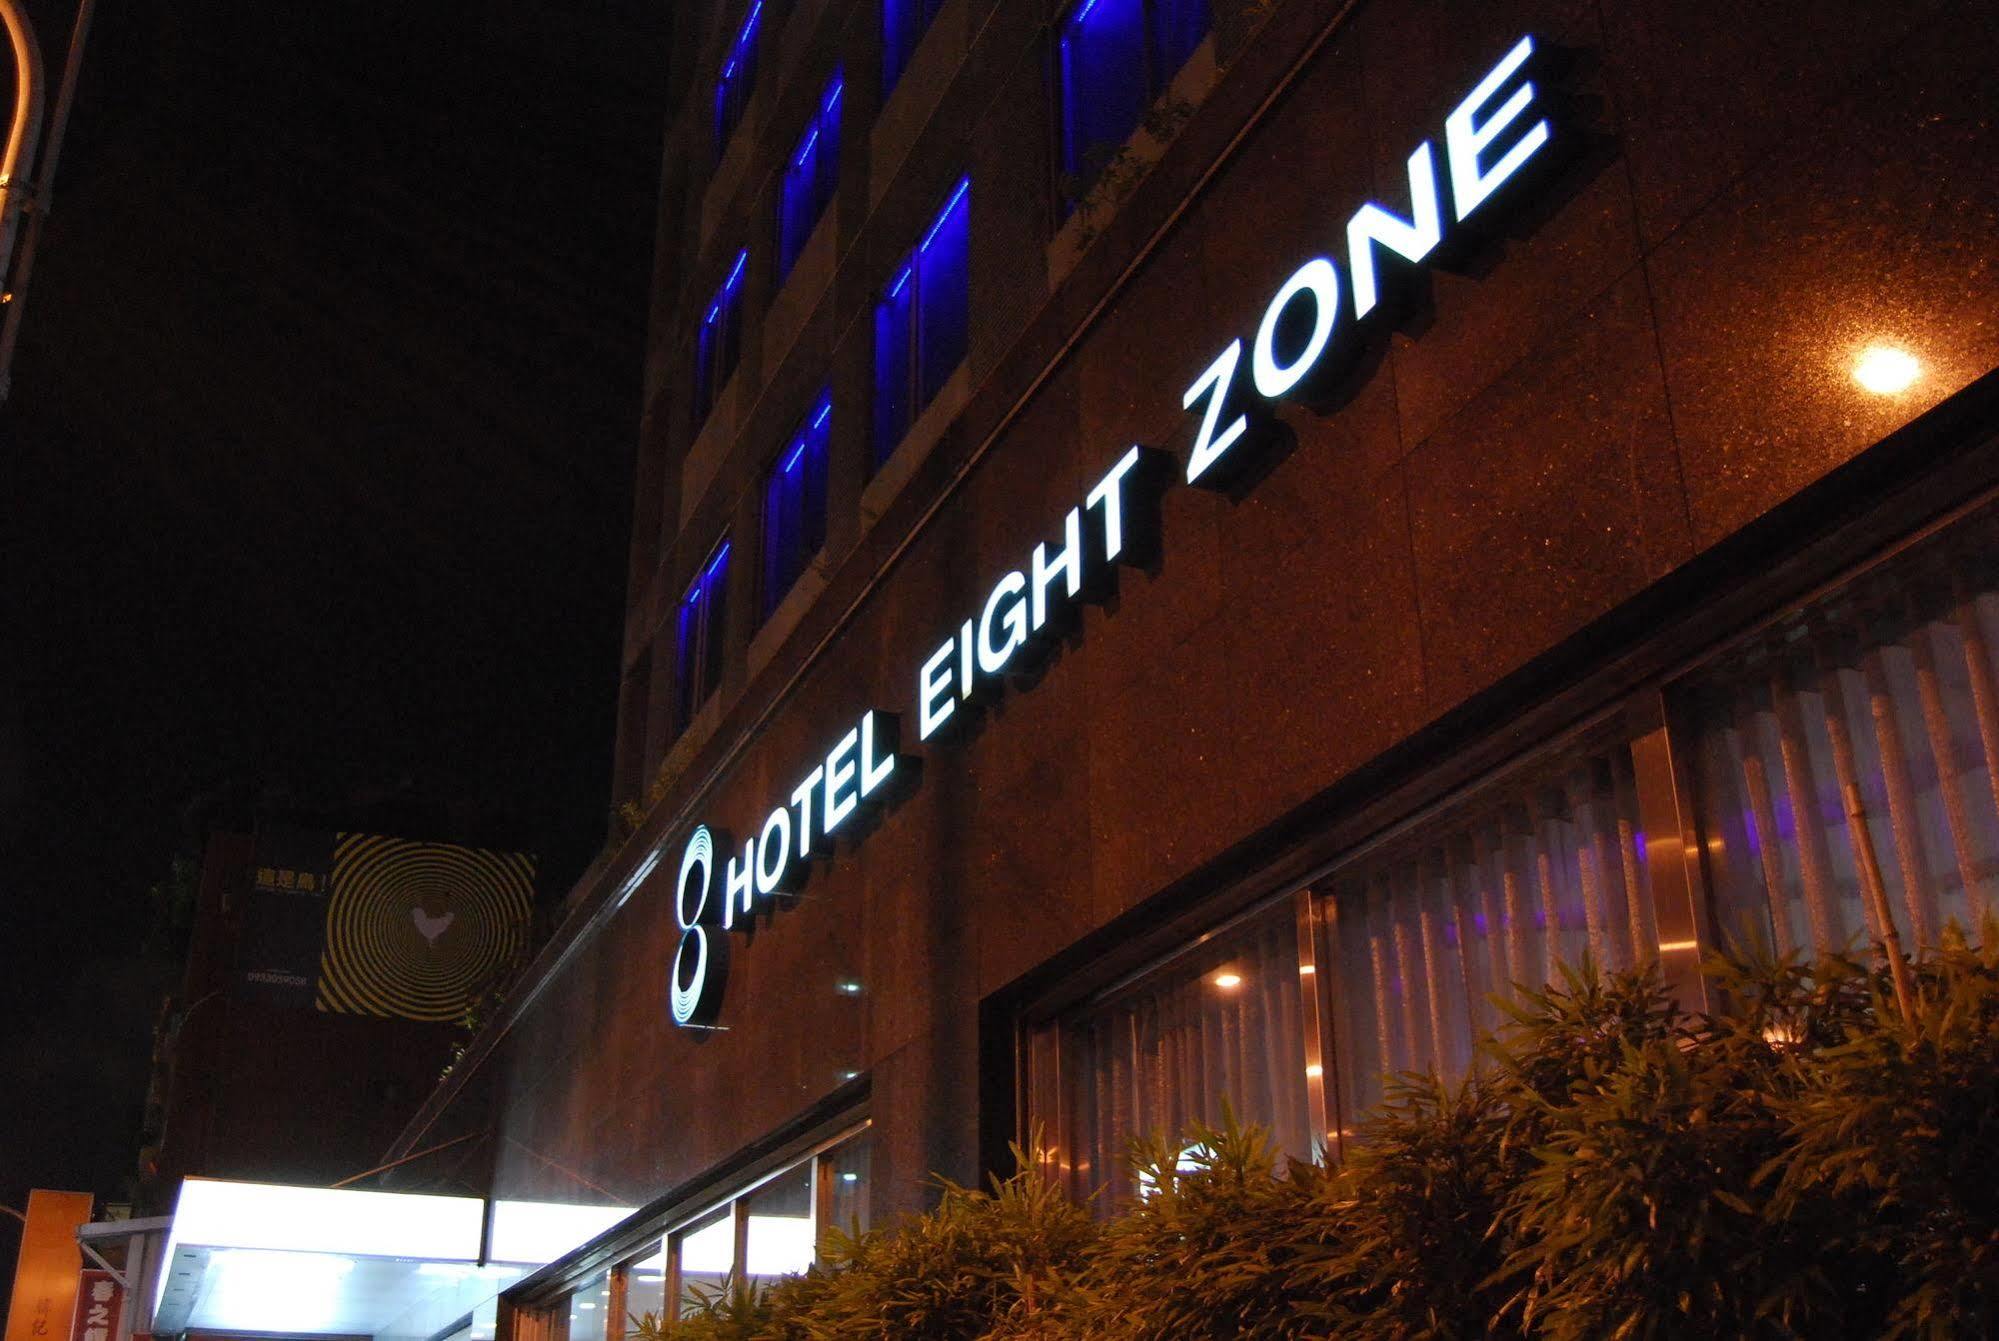 Hotel Eight Zone Taipei Exterior photo